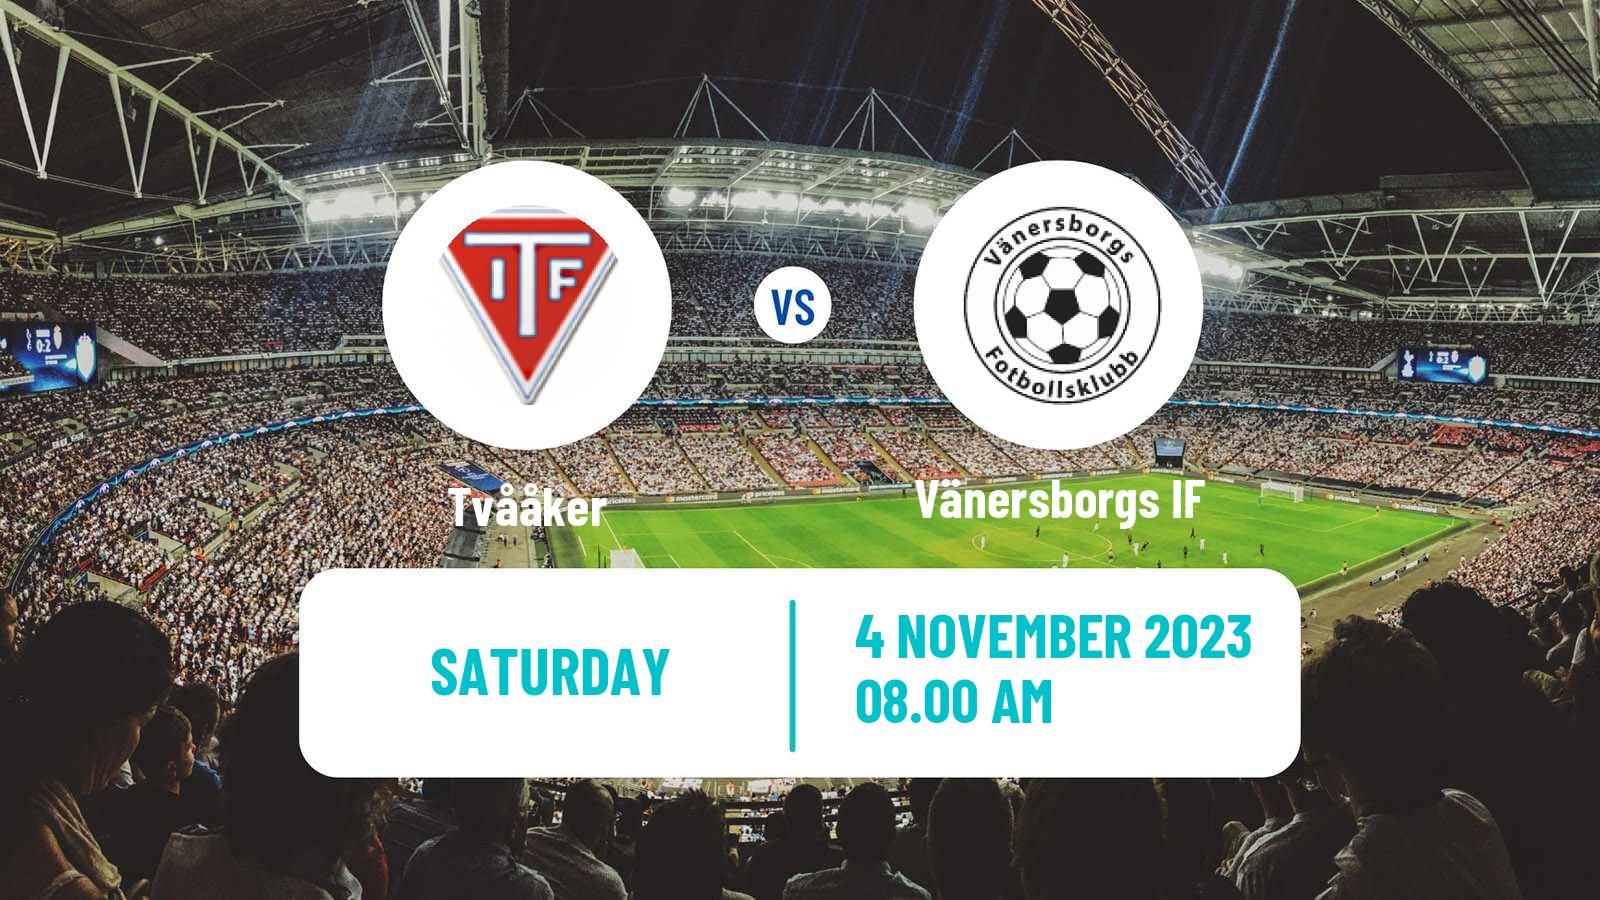 Soccer Swedish Division 1 Södra Tvååker - Vänersborgs IF